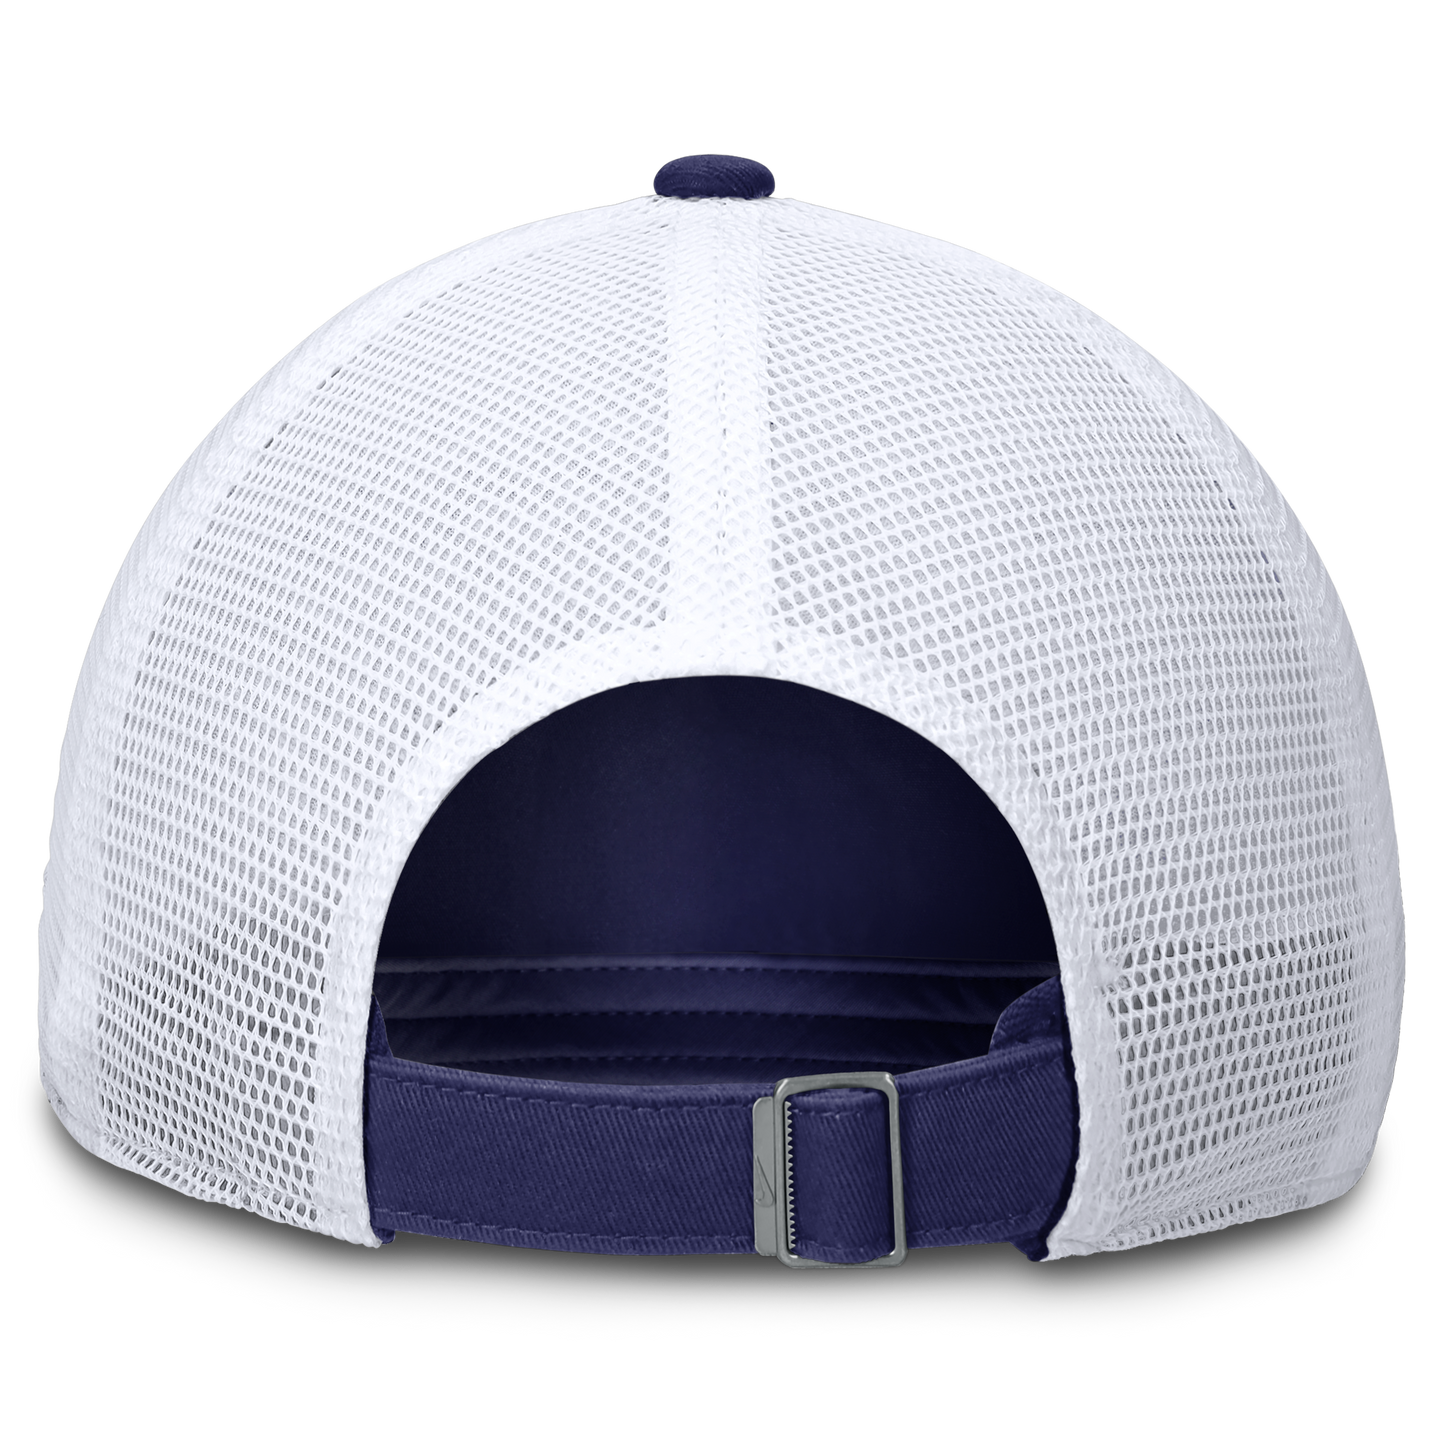 Chicago Cubs Nike Blue/White "CHICAGO" Meshback Adjustable Hat